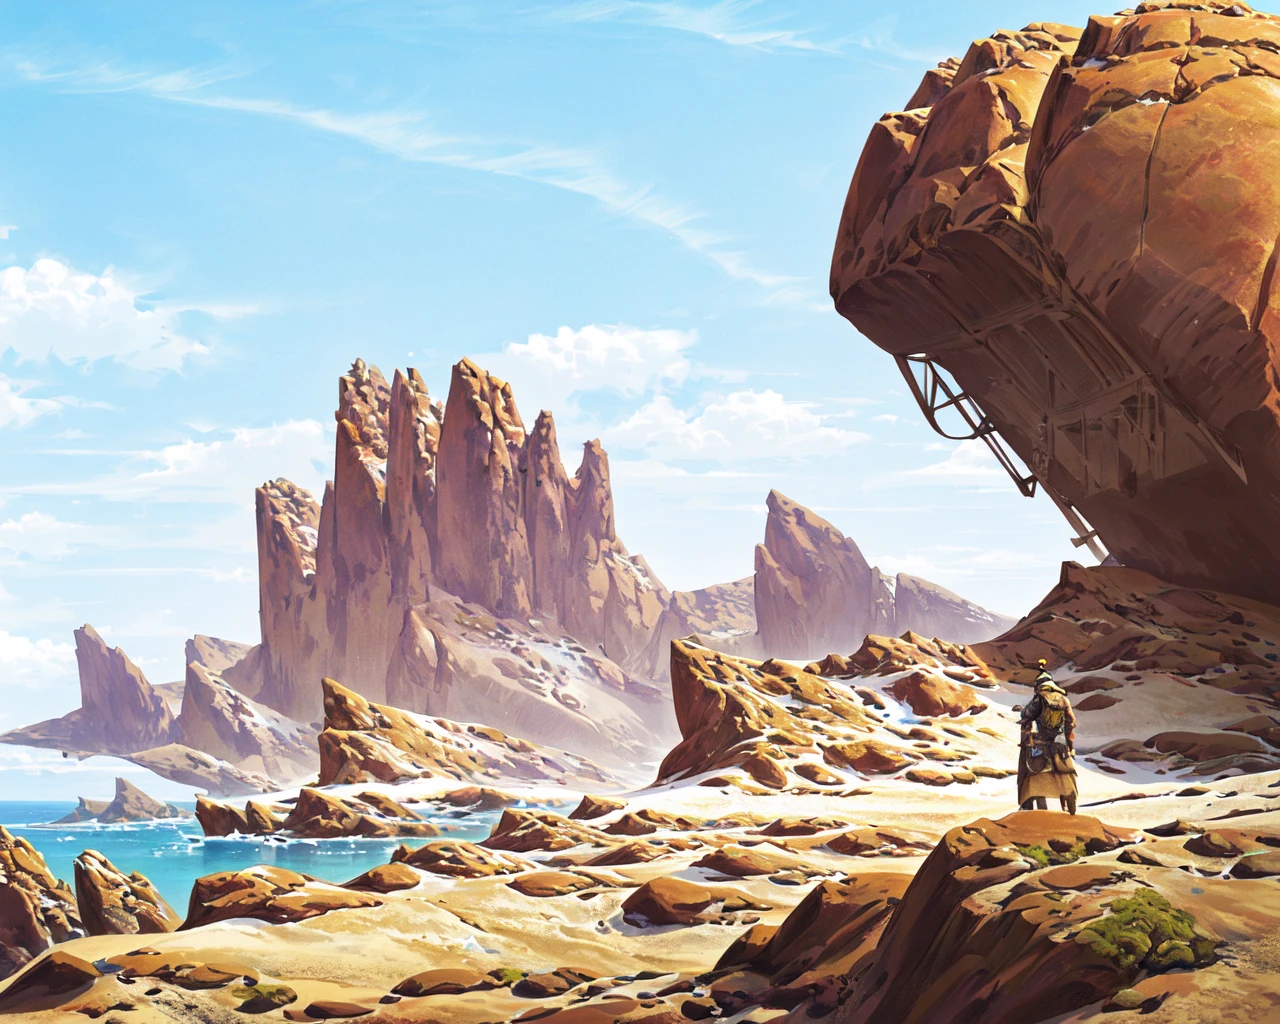 Ein Mann steht auf einer Klippe und überblickt eine Wüstenlandschaft mit einer riesigen Felsformation im Vordergrund und einem Schiff in der Ferne